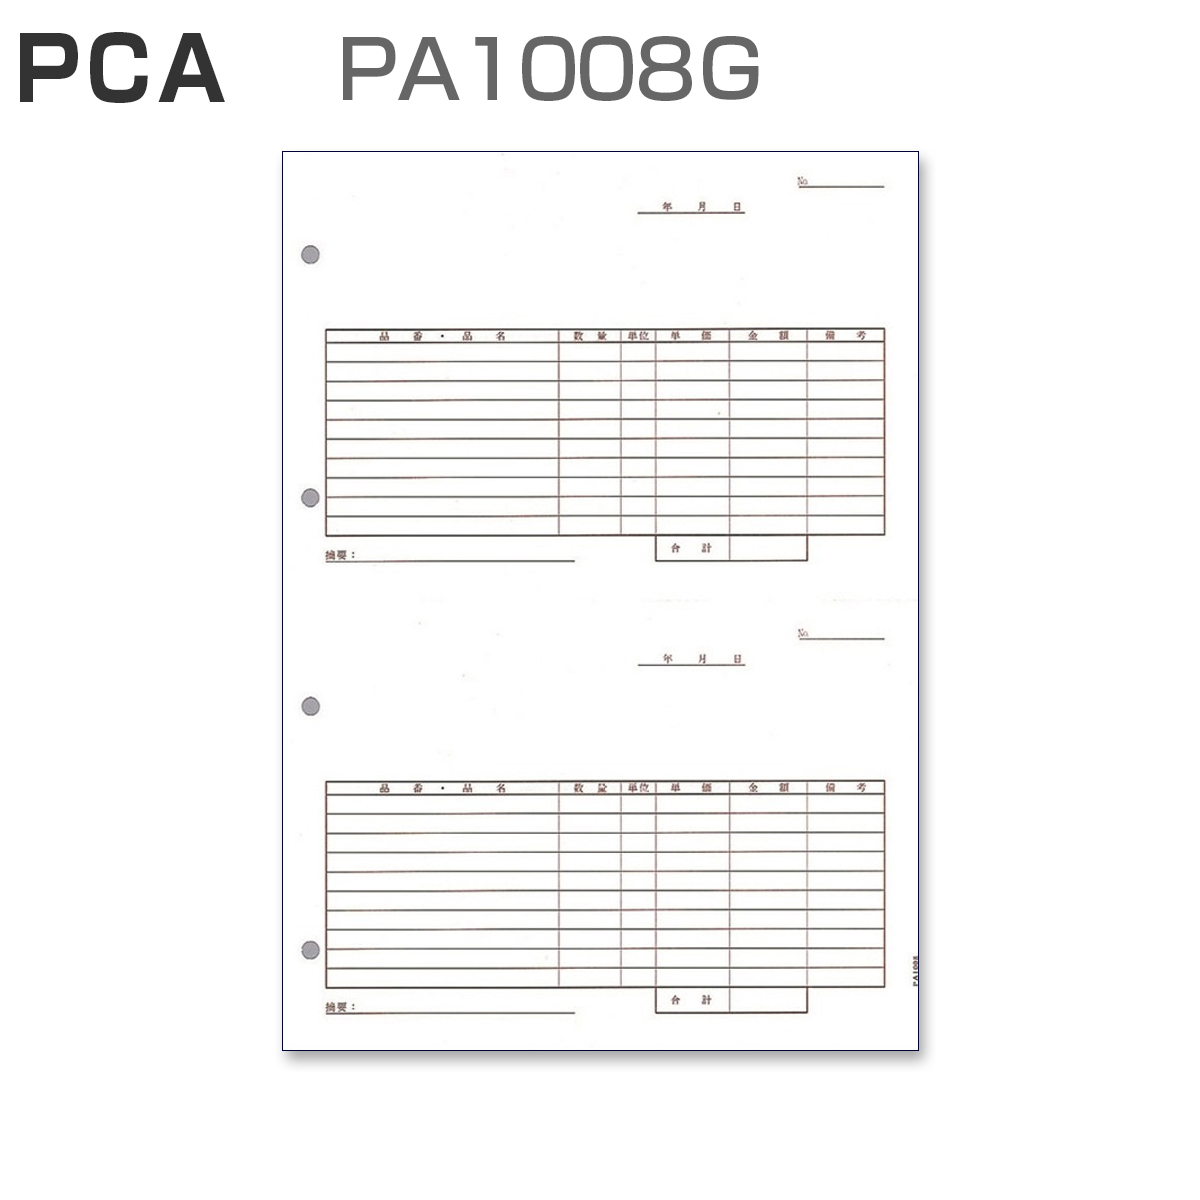 パナシア】 PCA PA1008G 汎用伝票 【2面式】 (500枚)